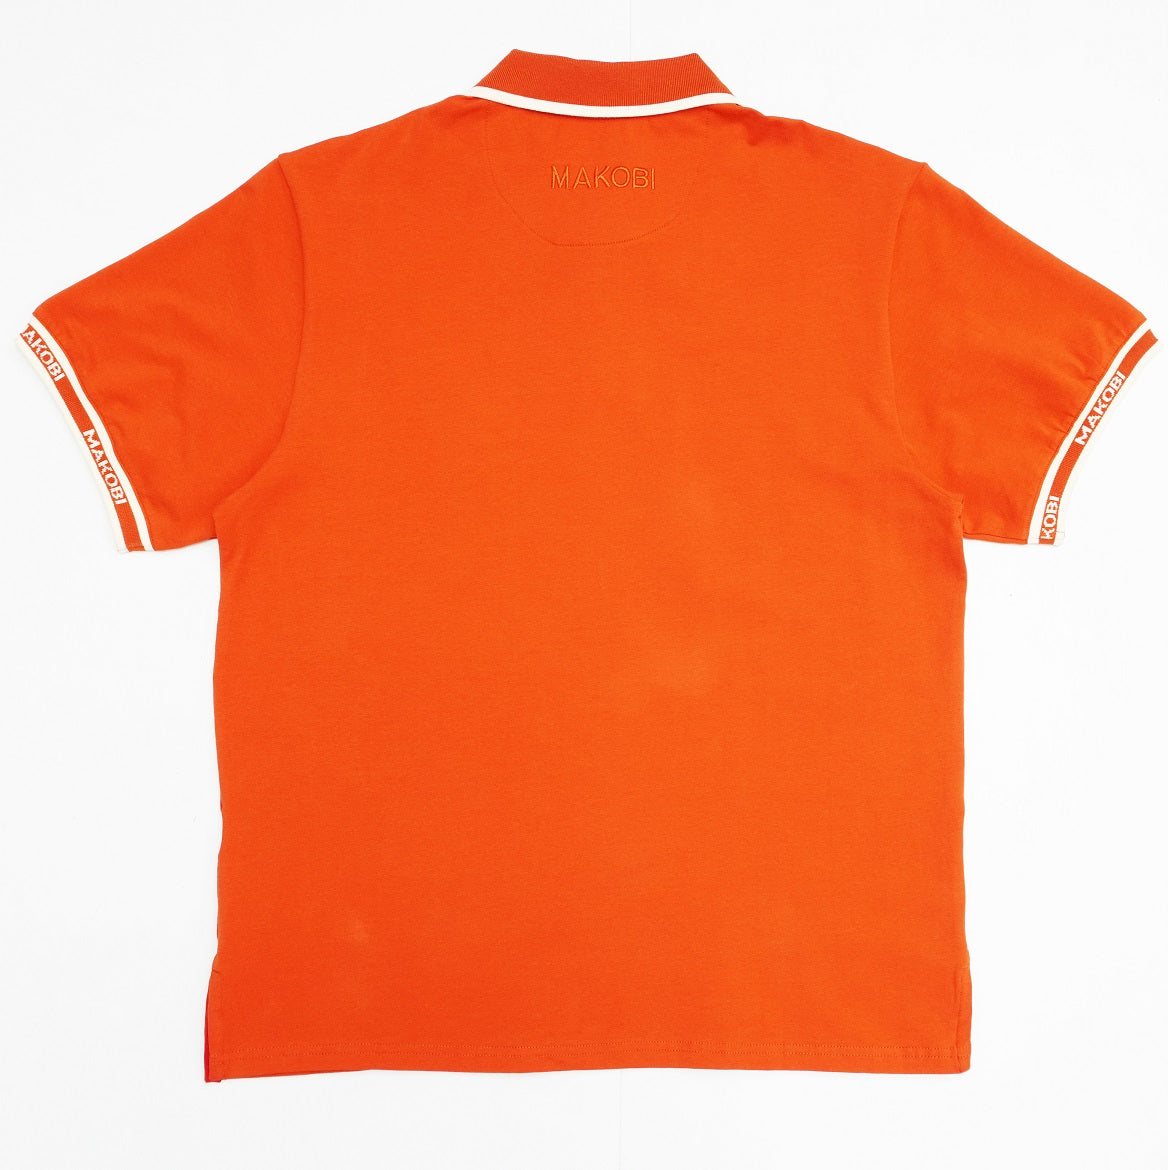 M365 Makobi Awọn ibaraẹnisọrọ Polo Shirt - Orange